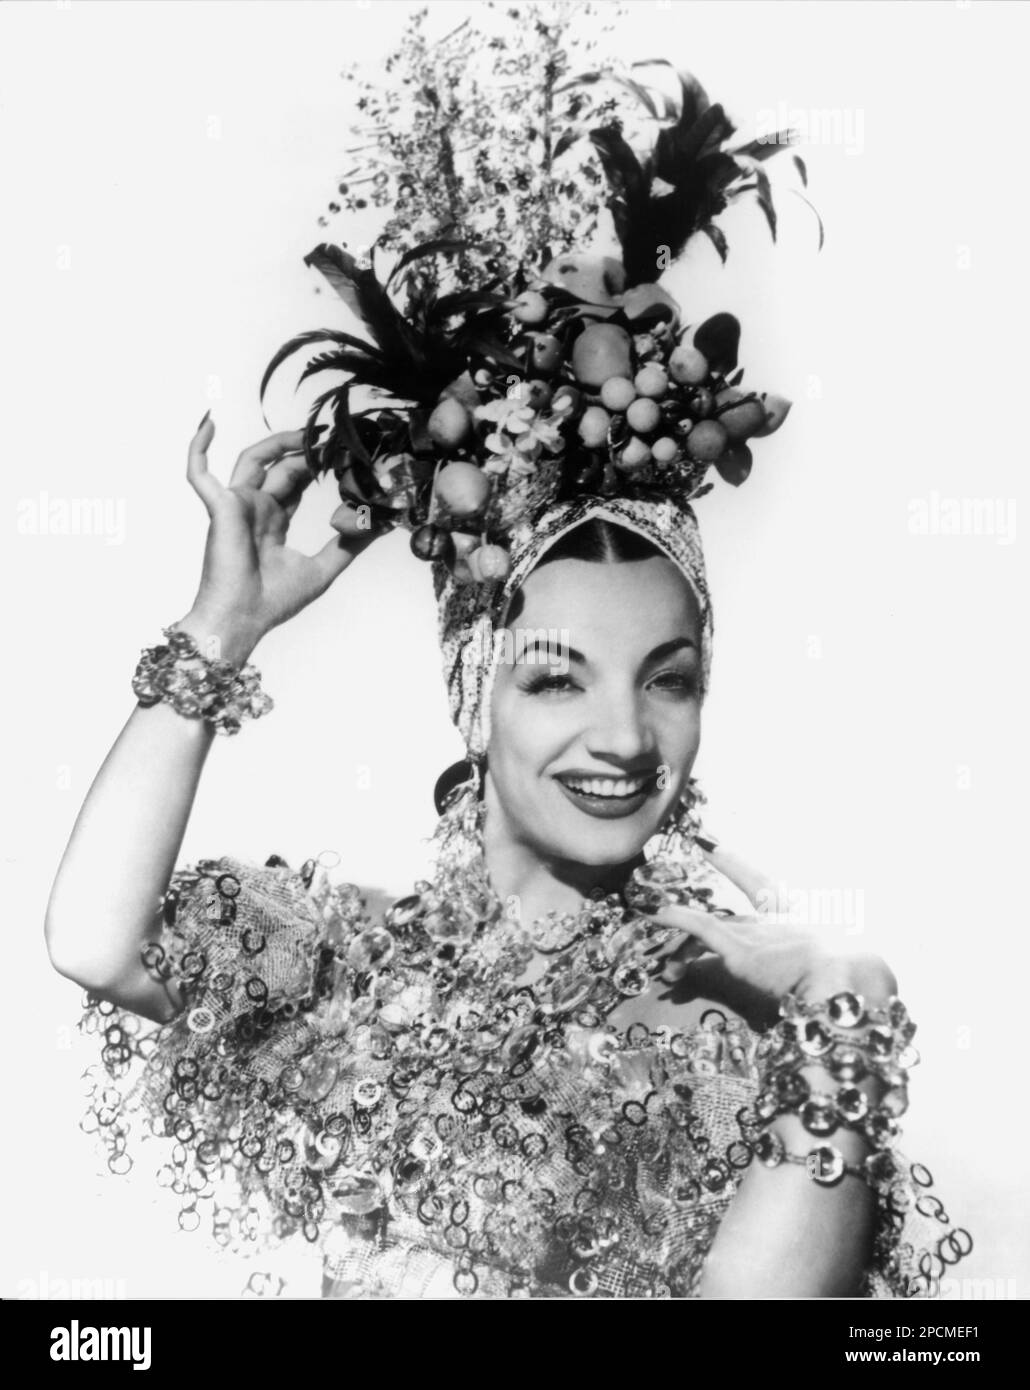 1940 ca : l'actrice brésilienne exotique CARMEN MIRANDA ( 1909 - 1955 ), Toujours pubblicity - FILM - FILM - CINÉMA - portrait - ritrato - CINÉMA - FILM - chapeau - cappello - bijoux - bijoux - gioiello - gioielli - sourire - sorriso - bracelets - bracciale - bracciali - braccialetto - SOURIRE - SORRISO - turban - turbante - SAMBA - Frutta finta - faux fruits © Archivio GBB / Banque D'Images